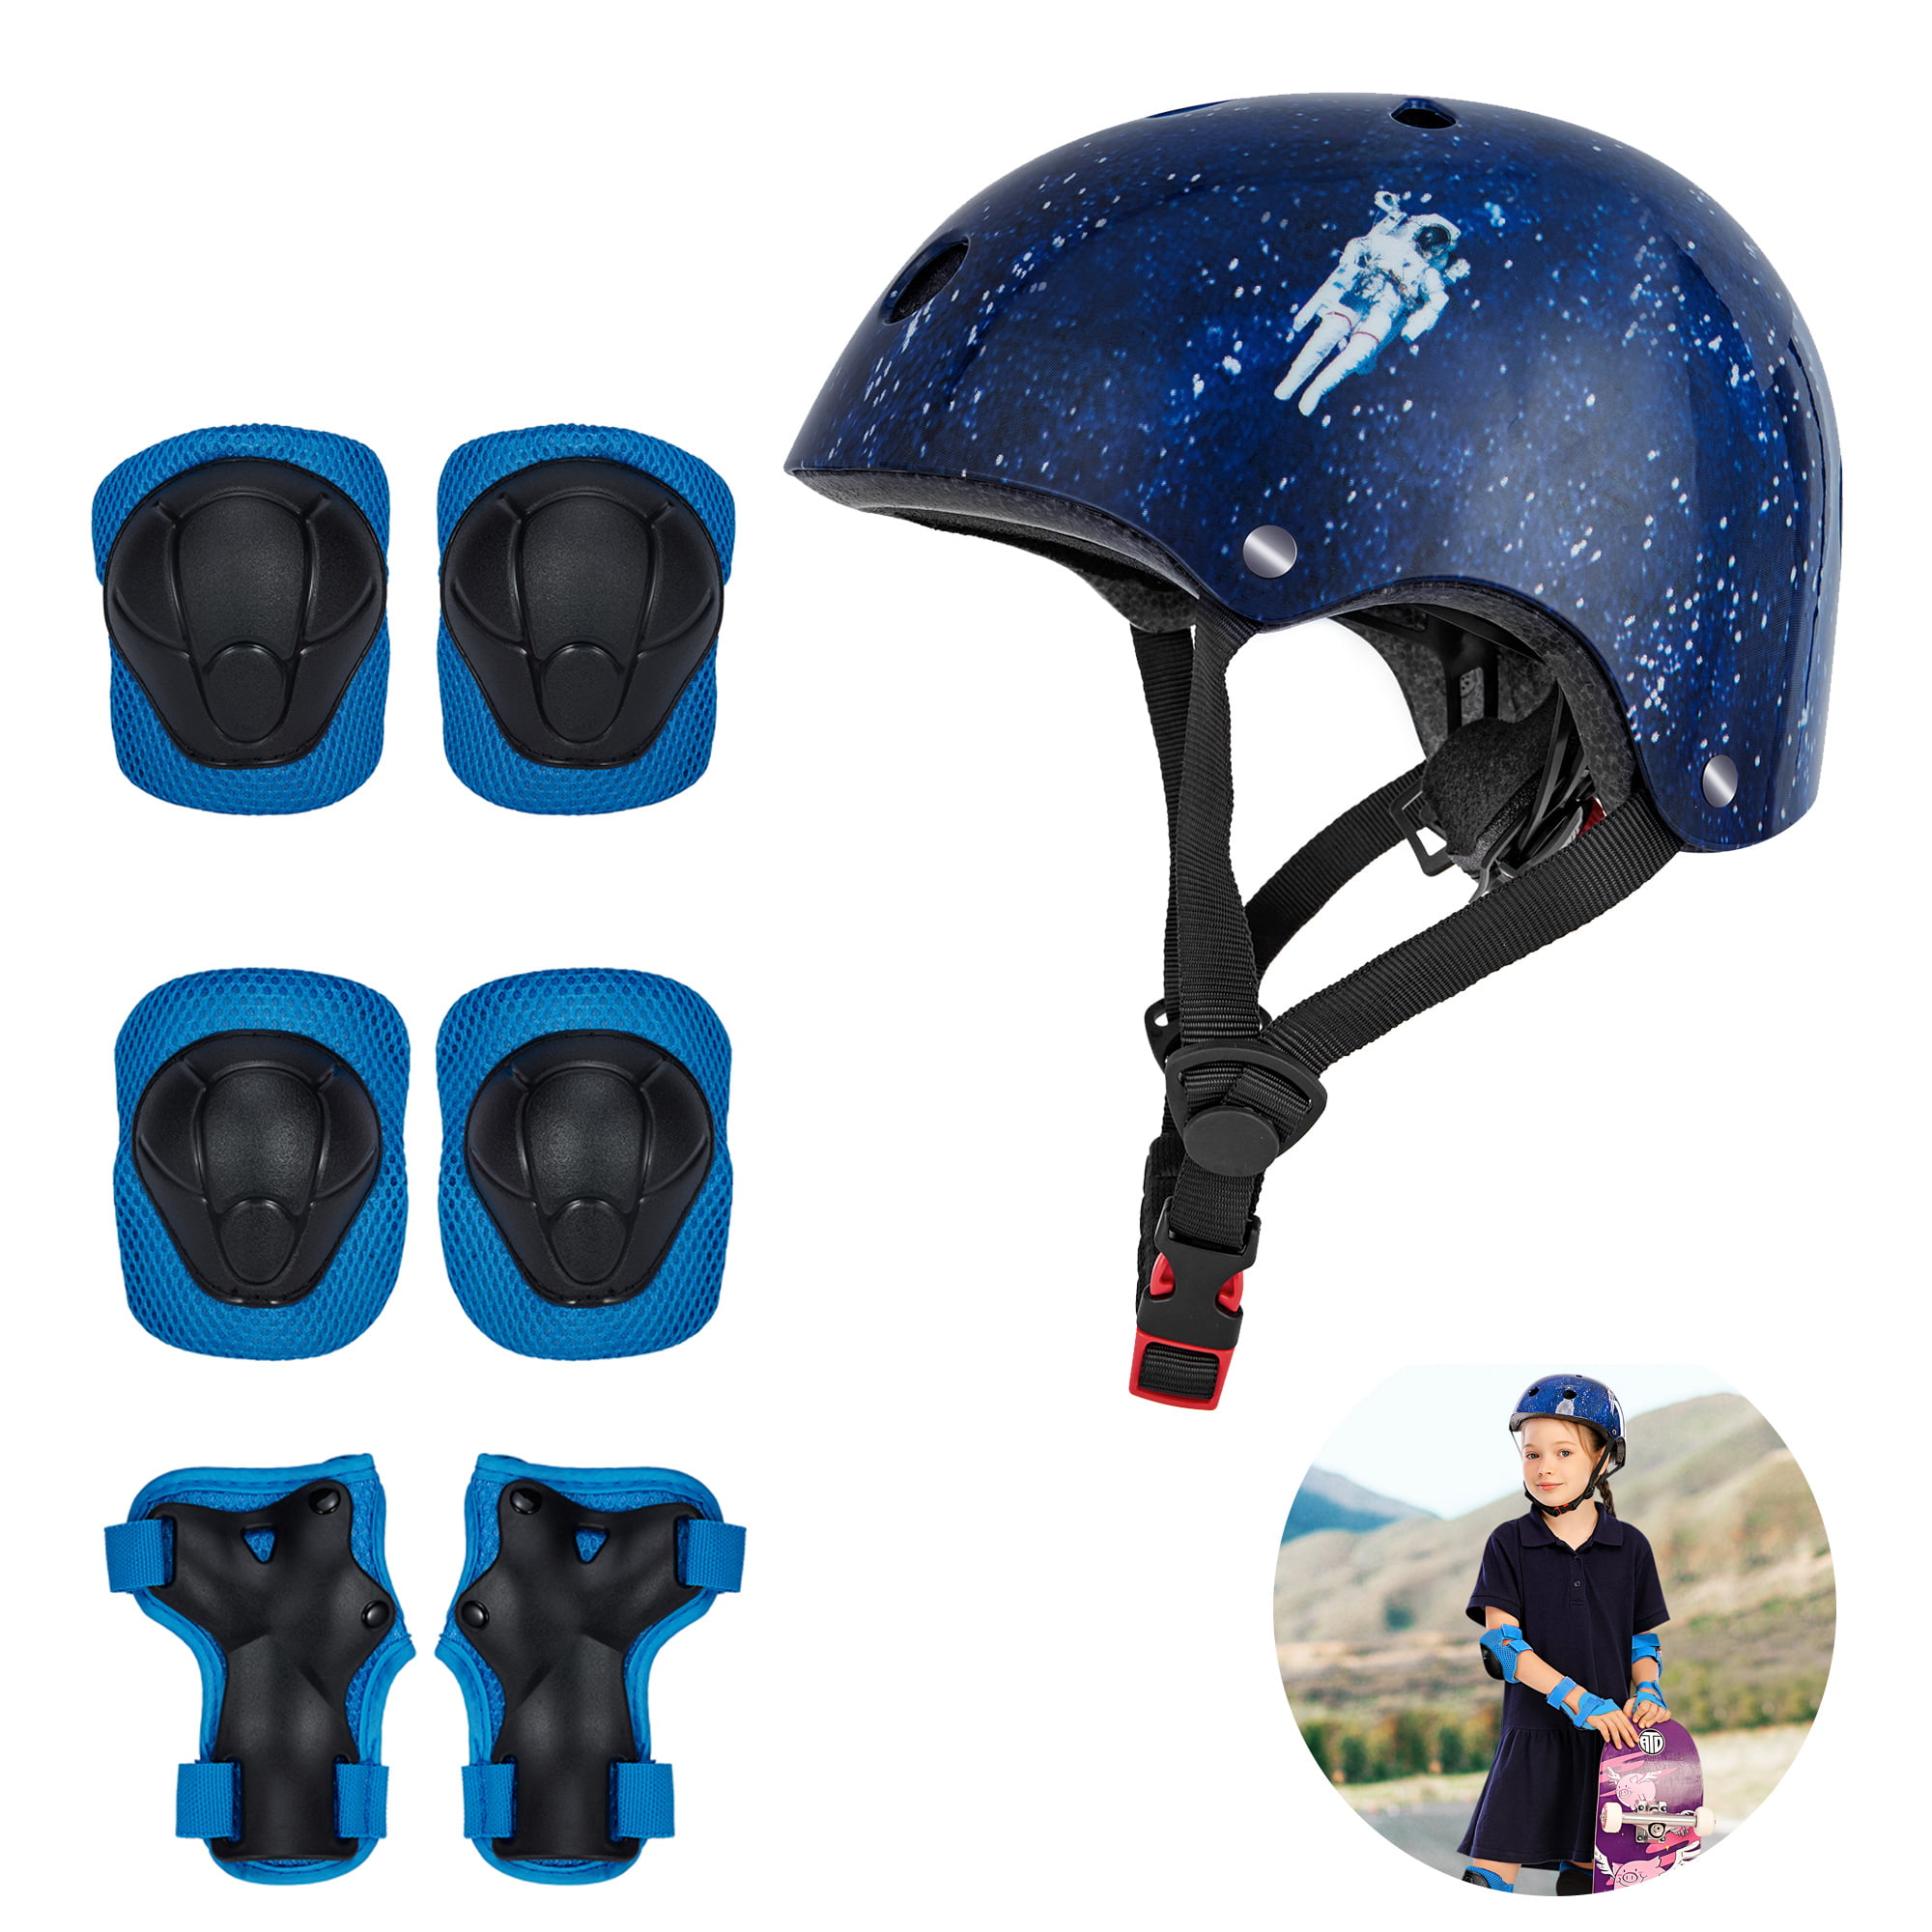 Kids Safety Helmet Cycling Bike Bicycle Protective Head Skate Board Sport Helmet 